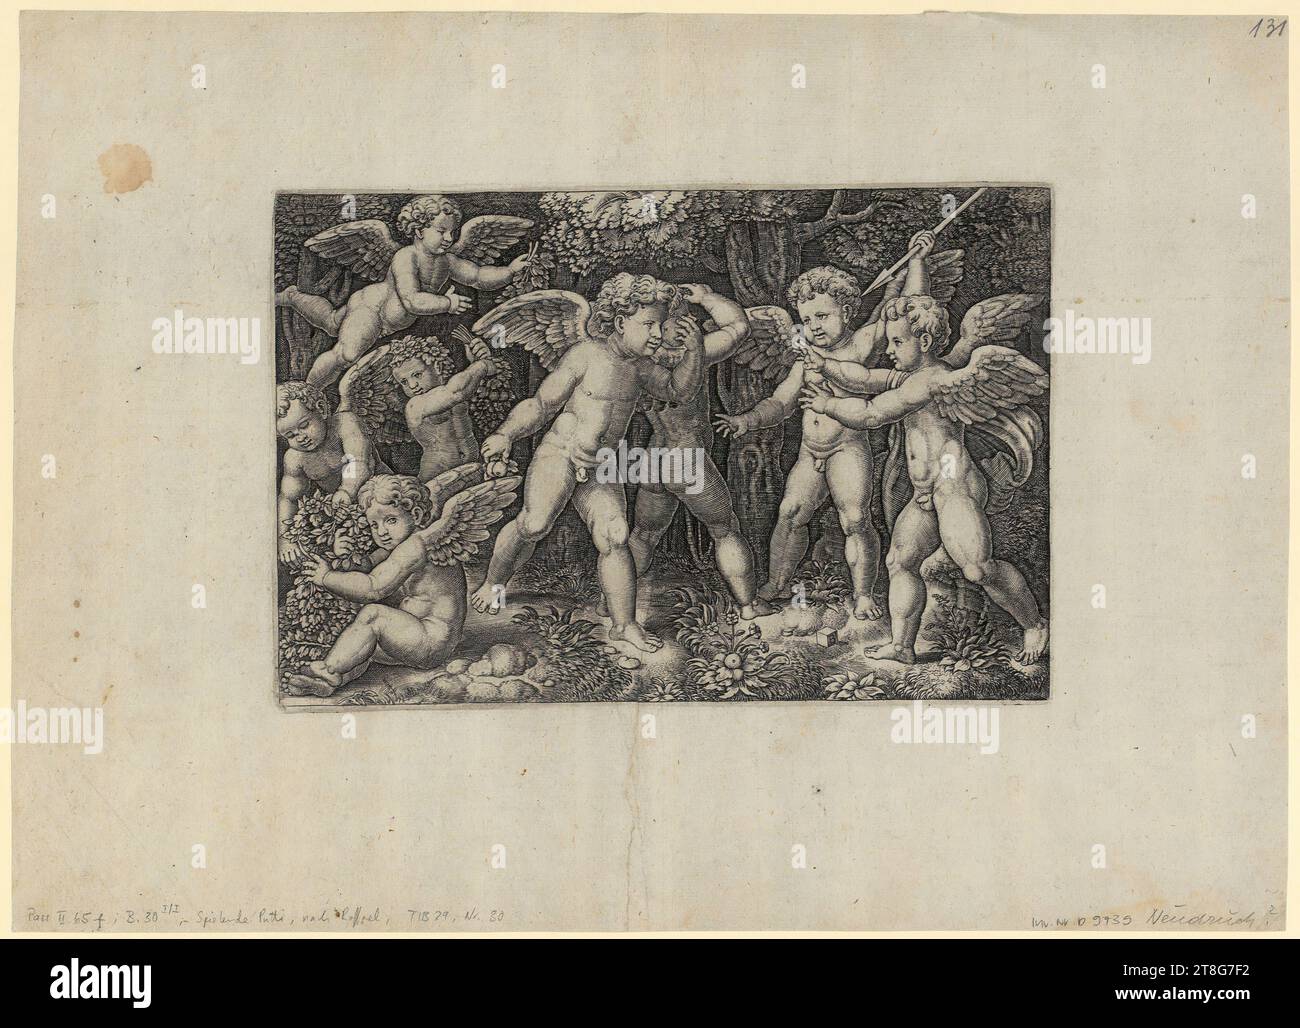 Albrecht Dürer (1471 - 1528), Künstler, Fortuna, Anonym (Datierung unbekannt), Künstler:in Albrecht Dürer (1471 - 1528), Kopie nach Fortuna, Meister mit dem Würfel (1532, 1533 erwähnt), Künstler Raphael (1483 - 1520), danach, Putti spielend, Herkunft des Druckmediums: 1530 - 1560, Kupferstich, doppelt, Blattgröße: 33. 0 x 45,9 cm Plattenmarke: 18,8 x 28,0 cm, rechts unten auf die Matrize monogrammiert 'B', rückwärts Bildmitte violett Stempel 'KUNSTGESCHICHTLICHER APPARAT DER HOCHSCHULE ZÜRICH Stockfoto